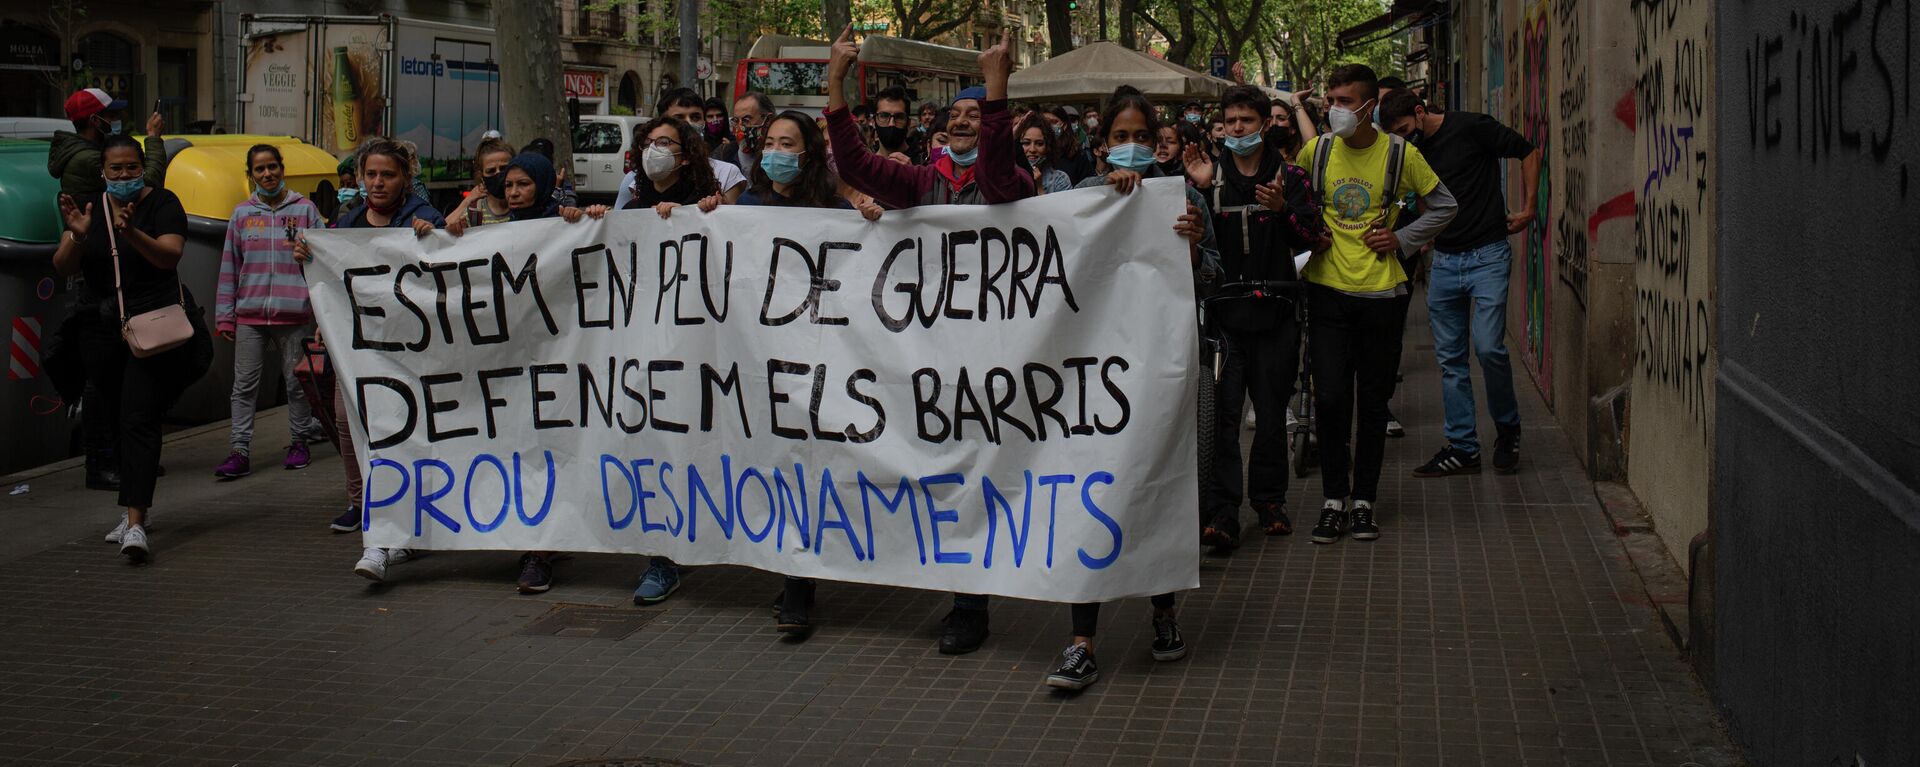 Manifestación contra los desahucios en Barcelona en abril de 2021 (referencial) - Sputnik Mundo, 1920, 25.05.2021